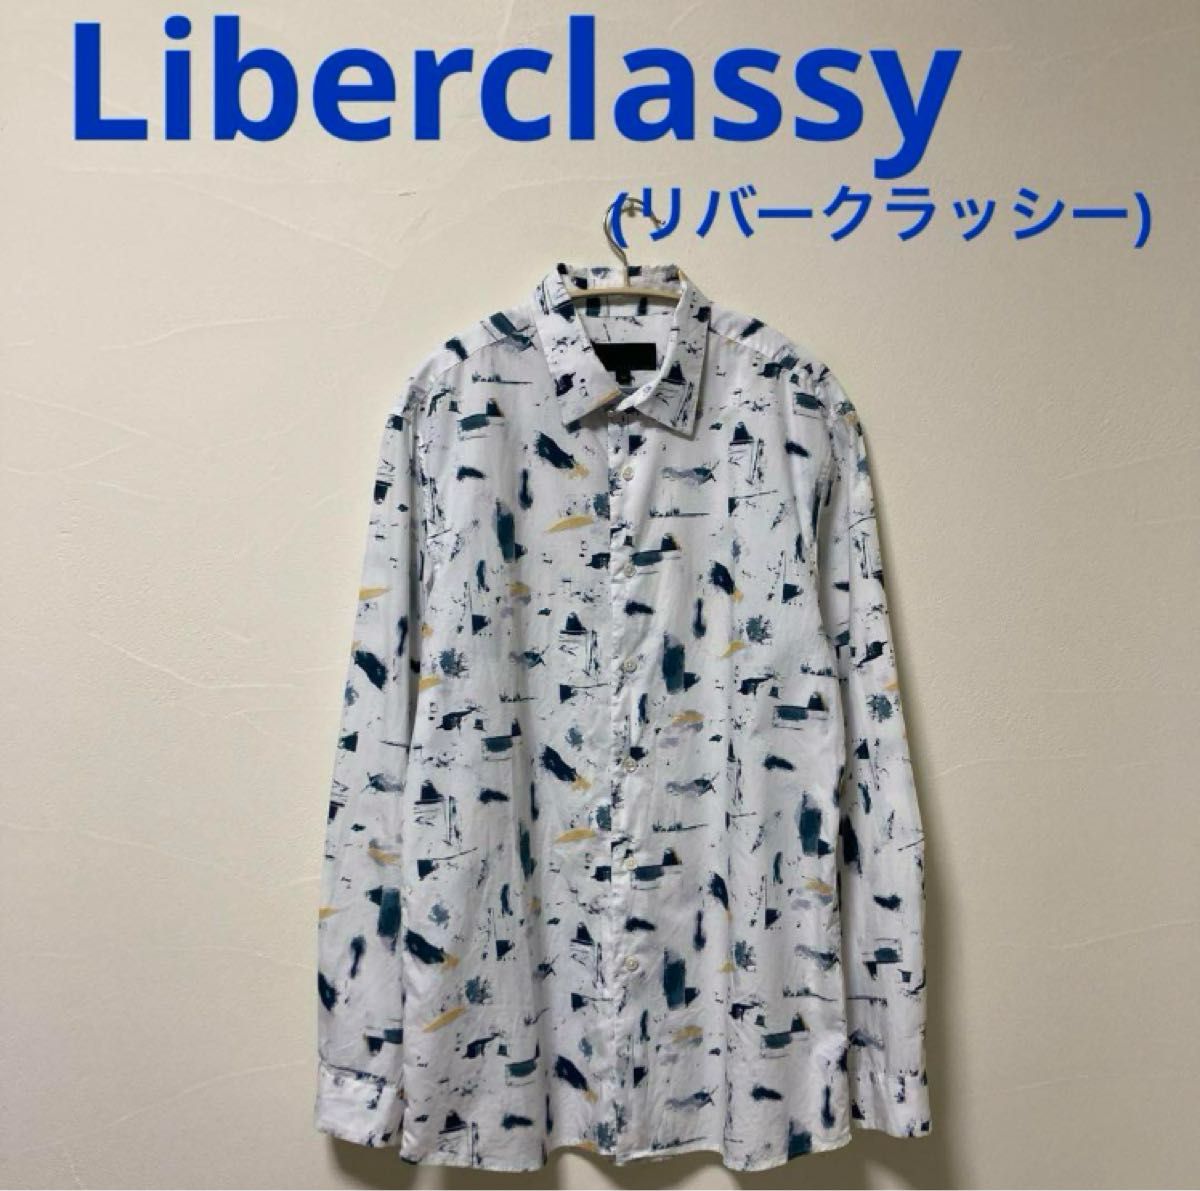 Liberclassy(リバークラッシー)総柄コットンシャツ